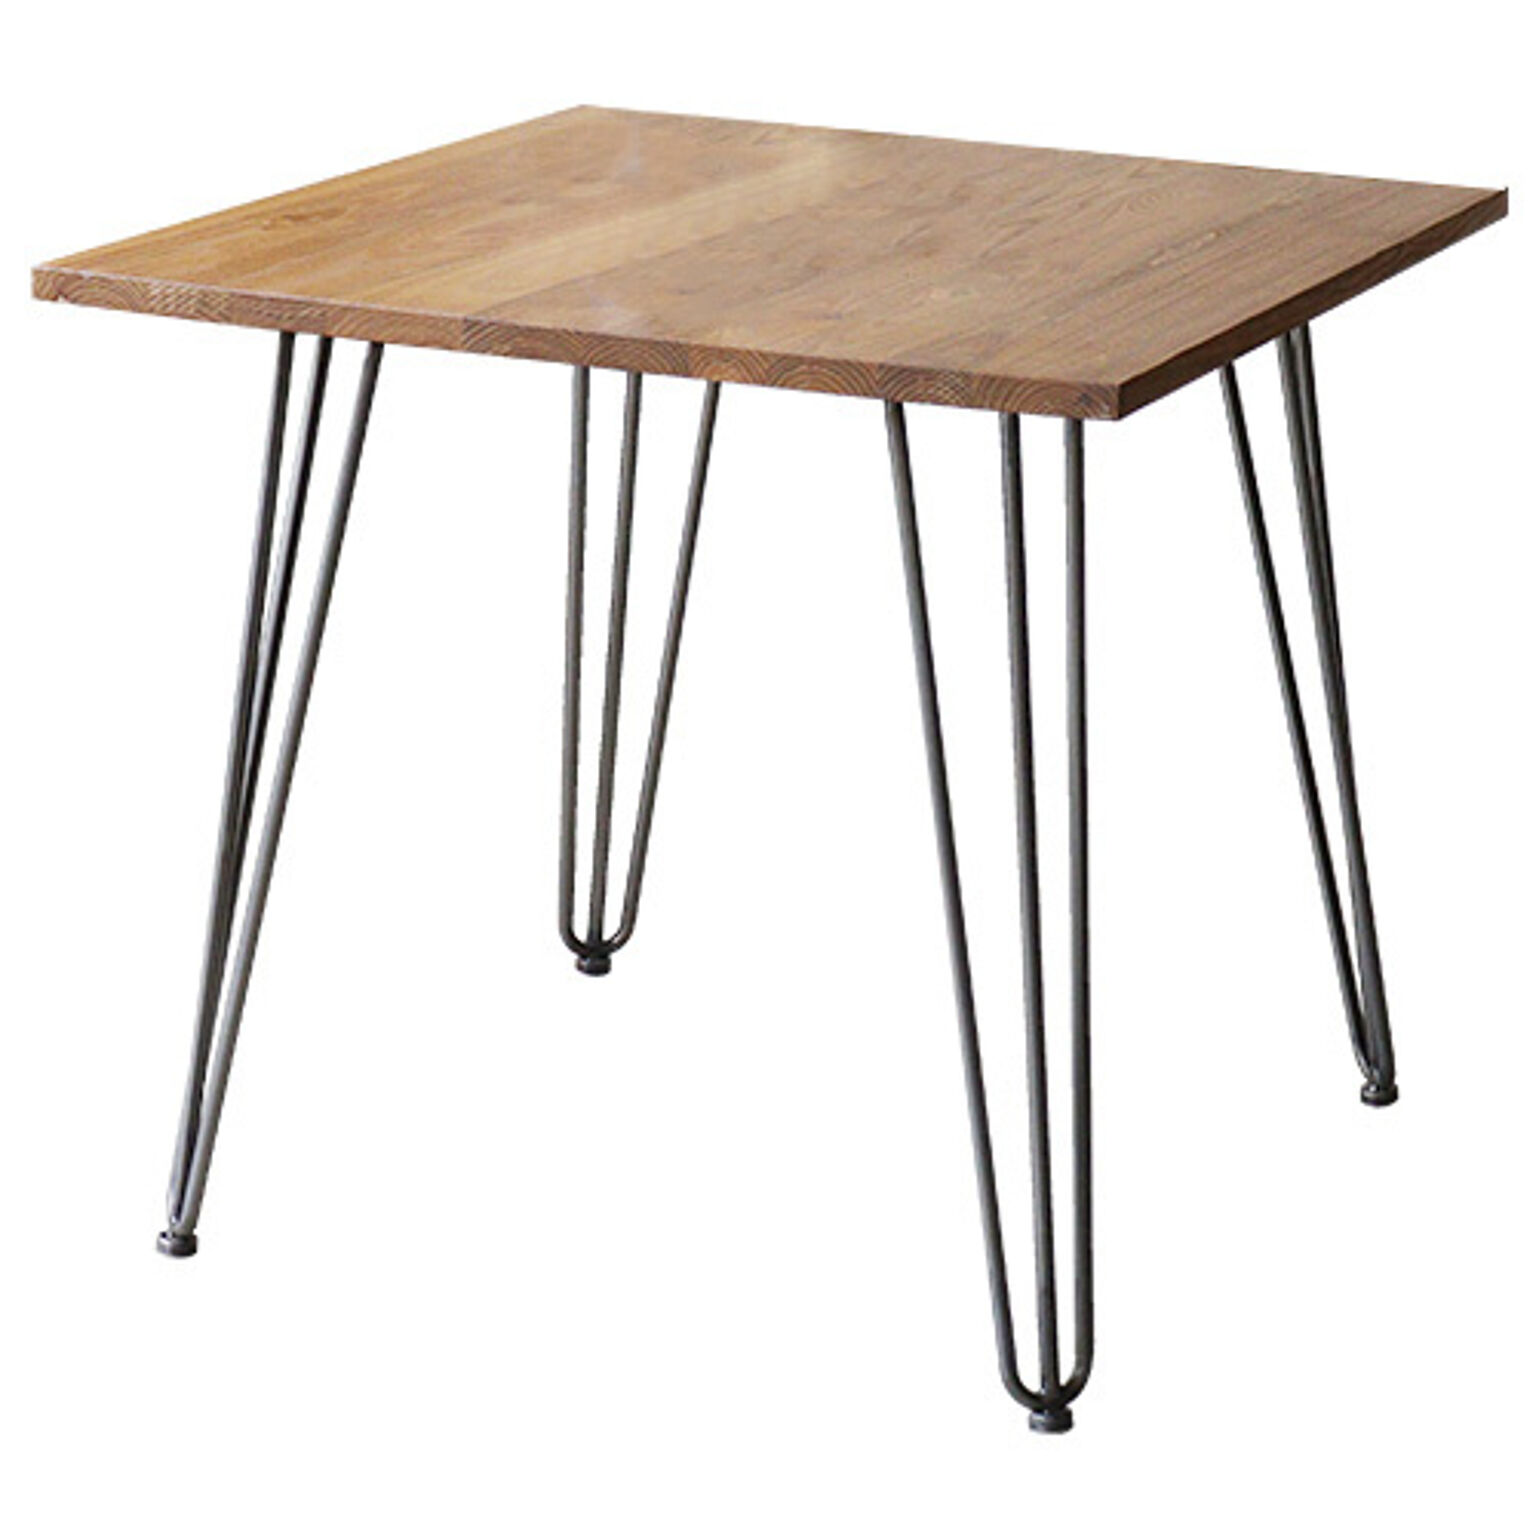 ダイニングテーブル 幅80cm 正方形 カフェ 北欧 西海岸 おしゃれ 木製 アイアン スチール 丸 男前 インテリア 机 1290テーブル